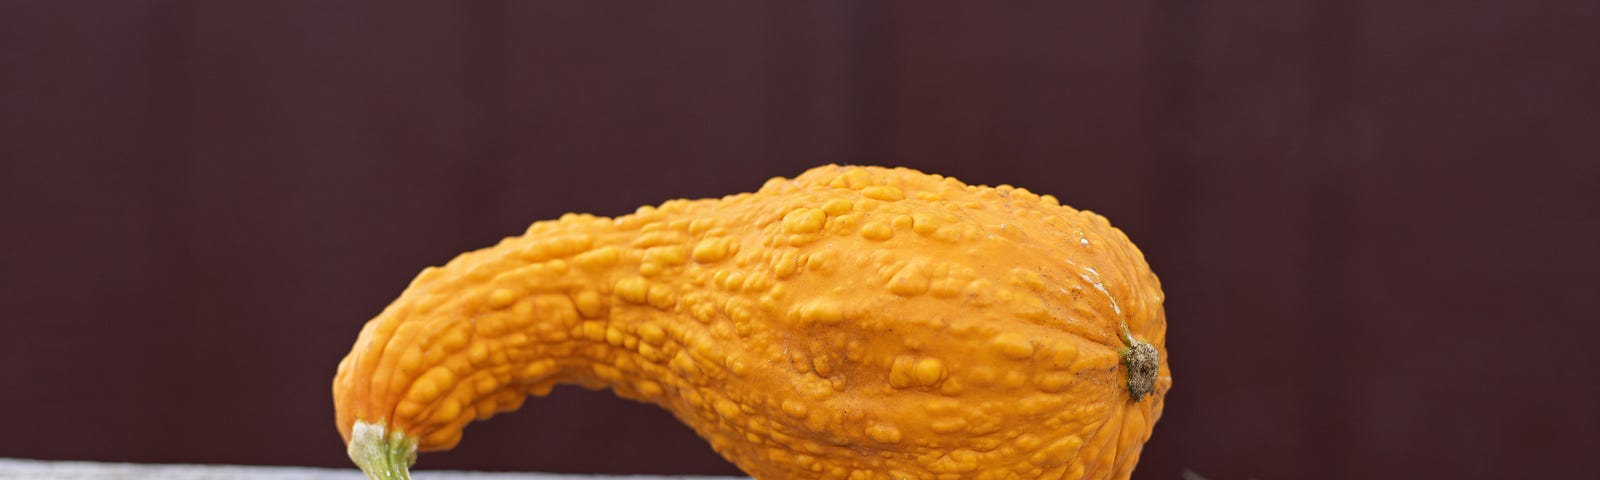 An warty orange gourd on a board.